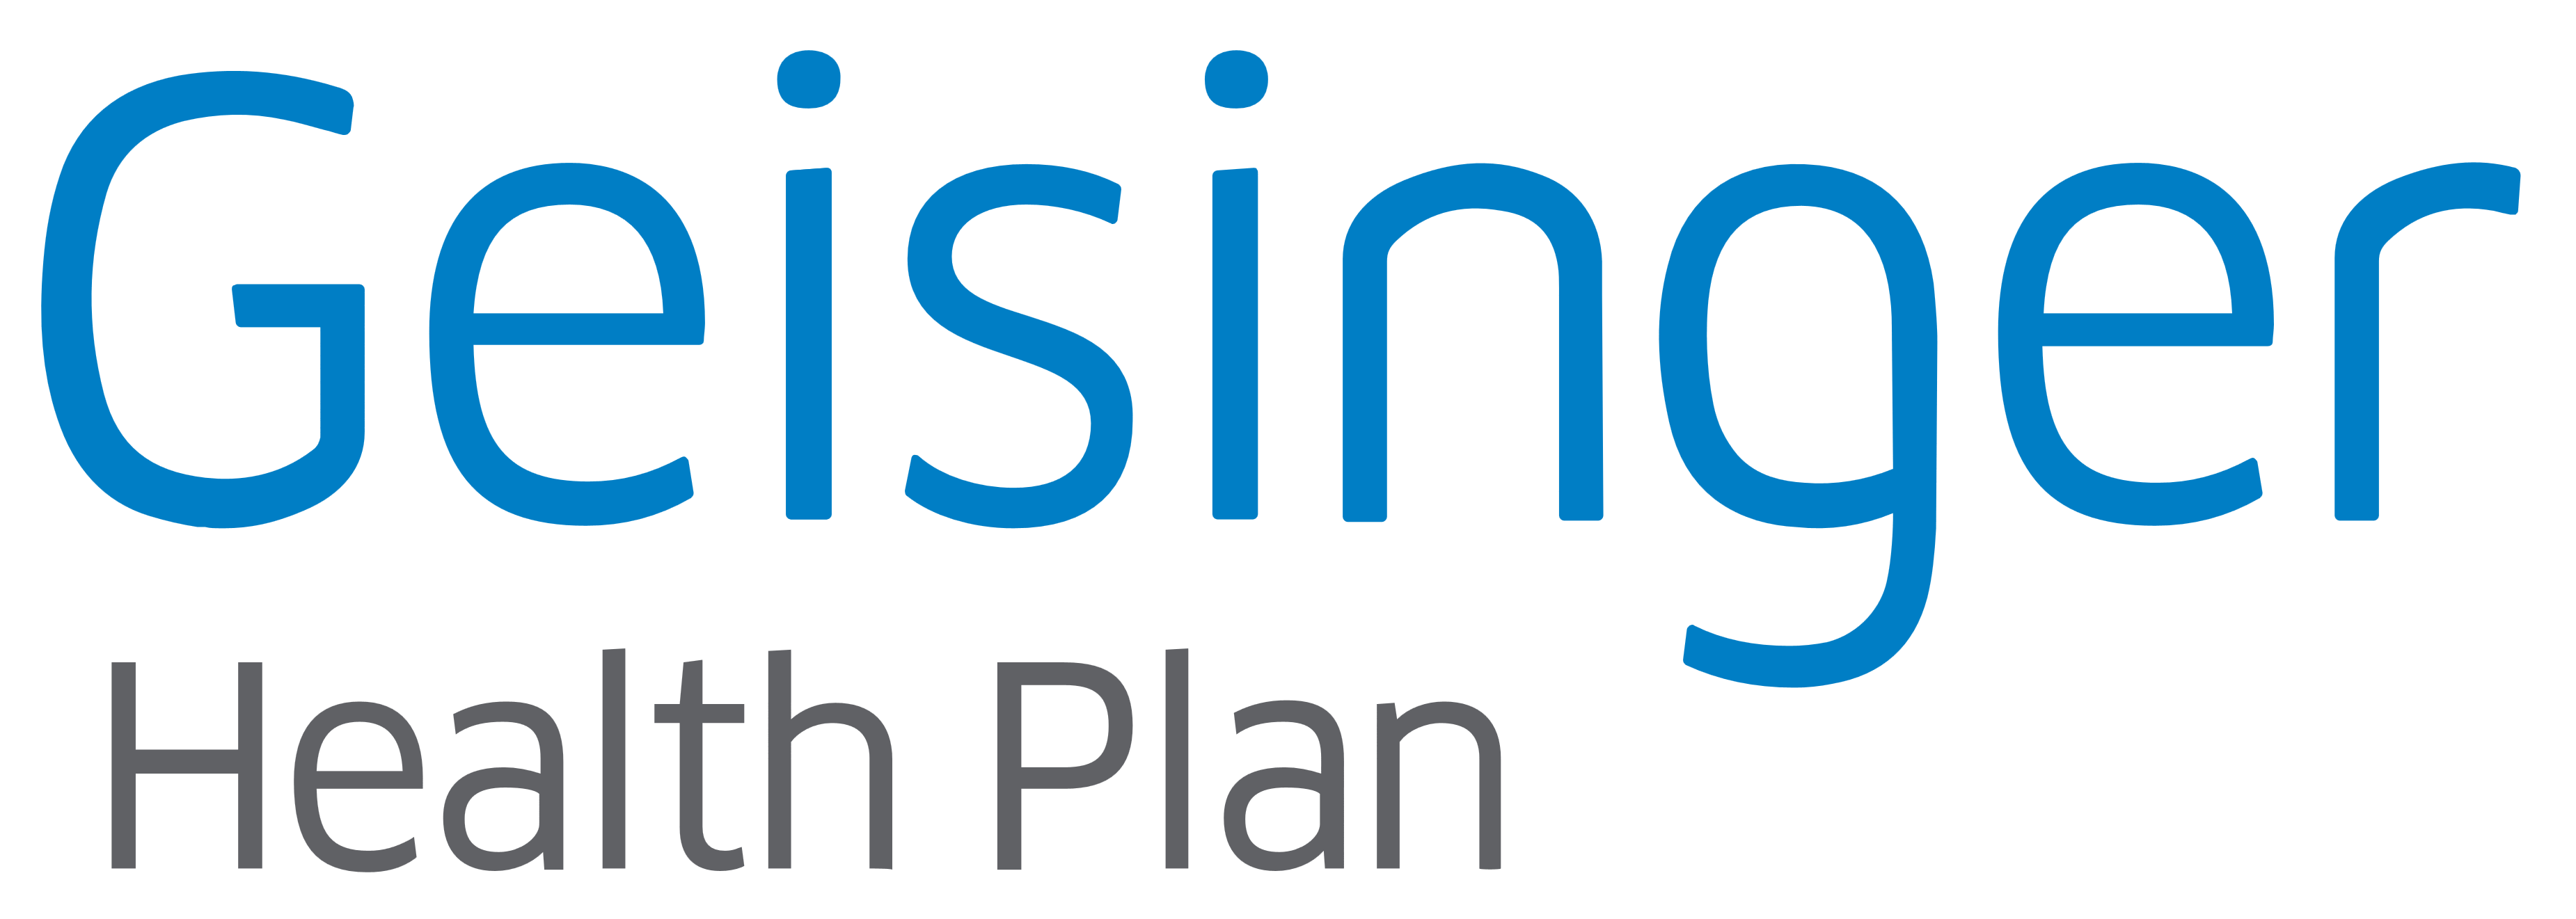 Geisinger Health Plan Logos Download